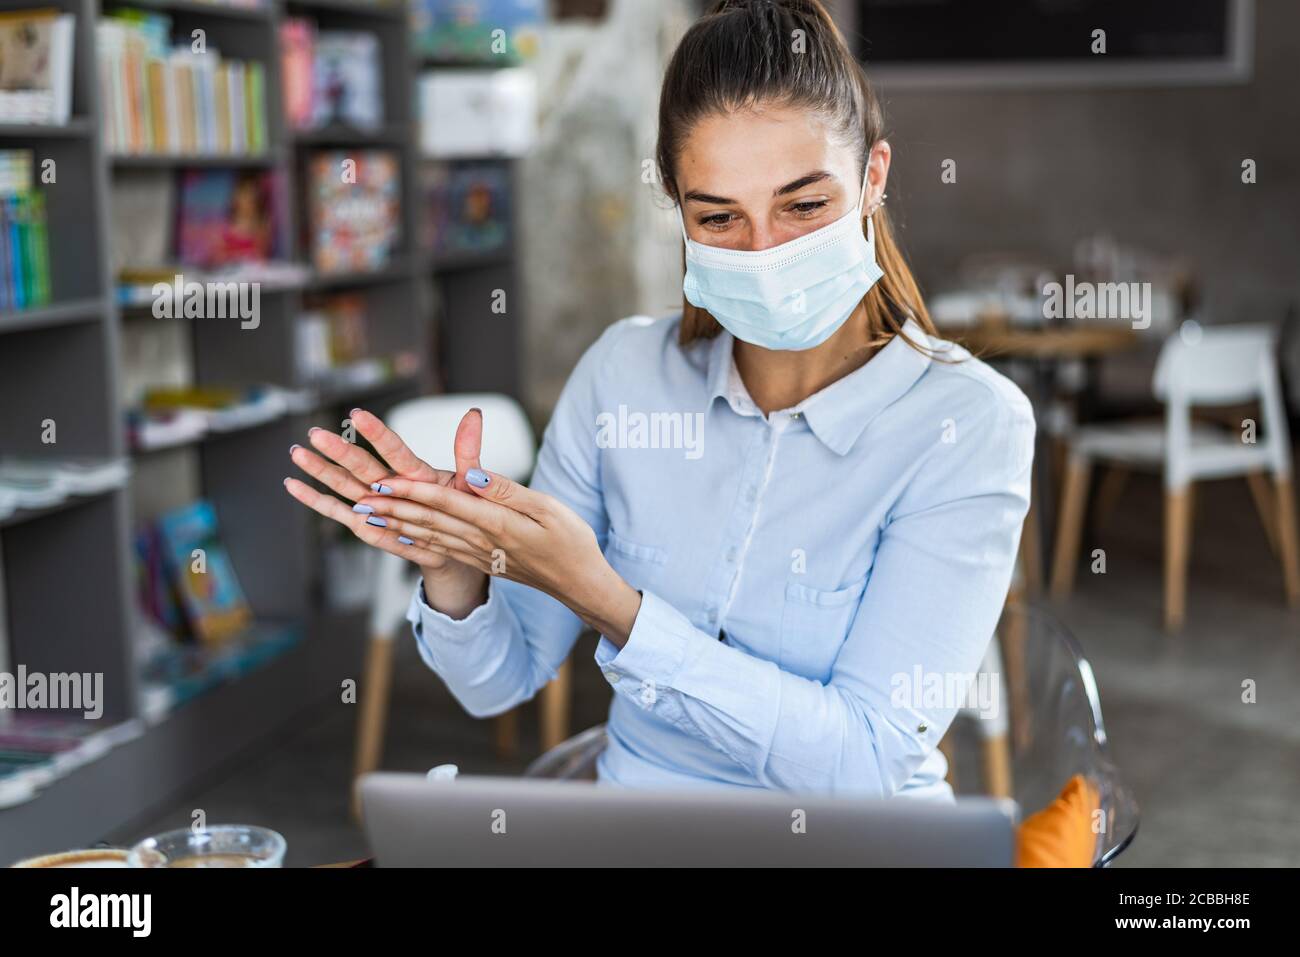 Portrait d'une jeune femme avec masque chirurgical en utilisant du gel désinfectant pour les mains au restaurant. Antiseptique, virus pandémique Corona, concept d'hygiène et de soins de santé. Banque D'Images